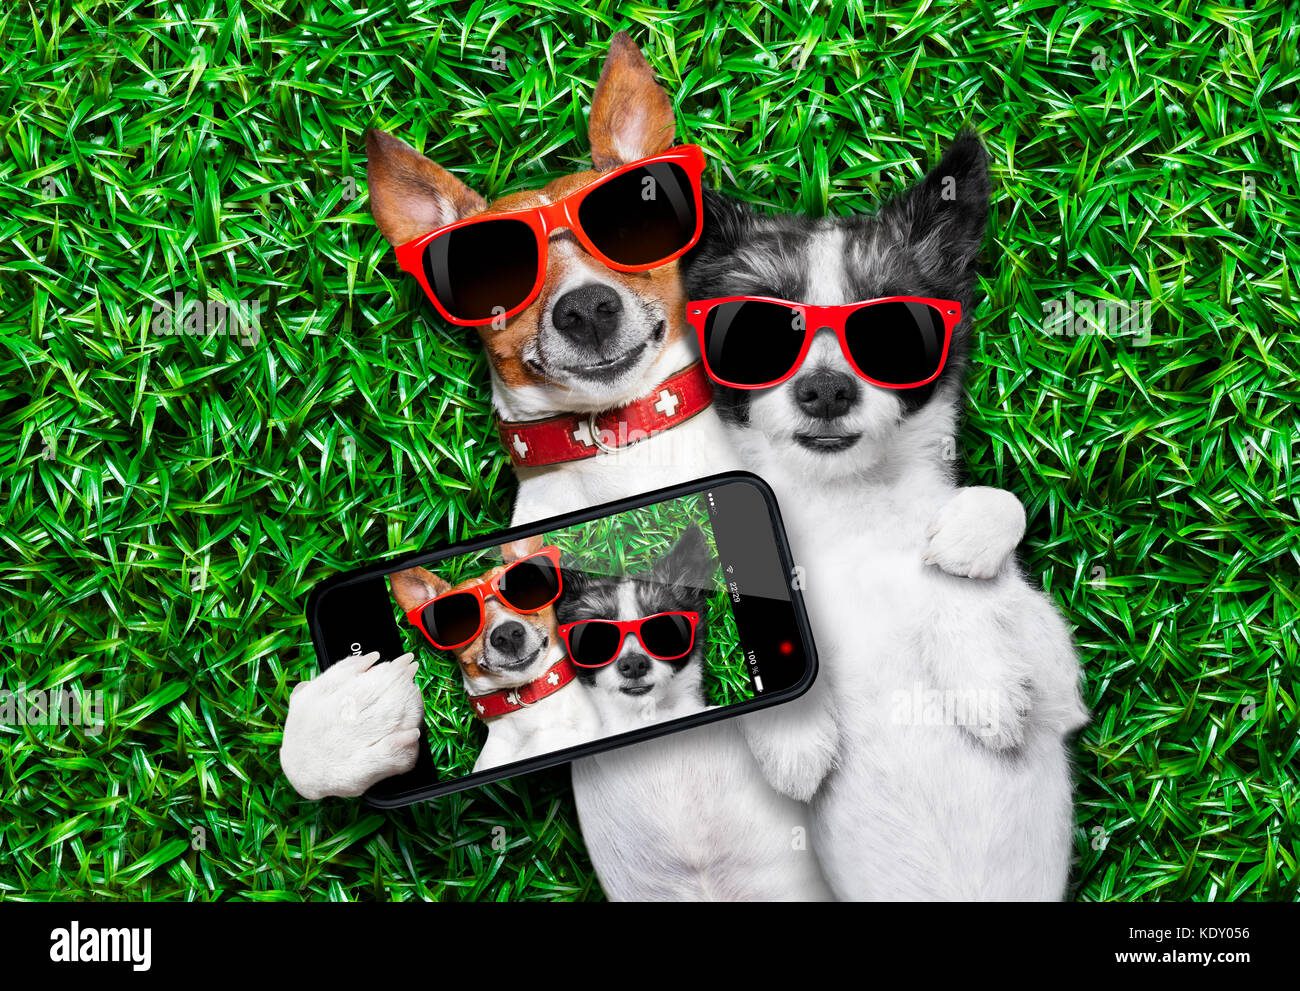 Par de perros en el amor muy cerca, tumbado en la hierba tomando un selfie Foto de stock